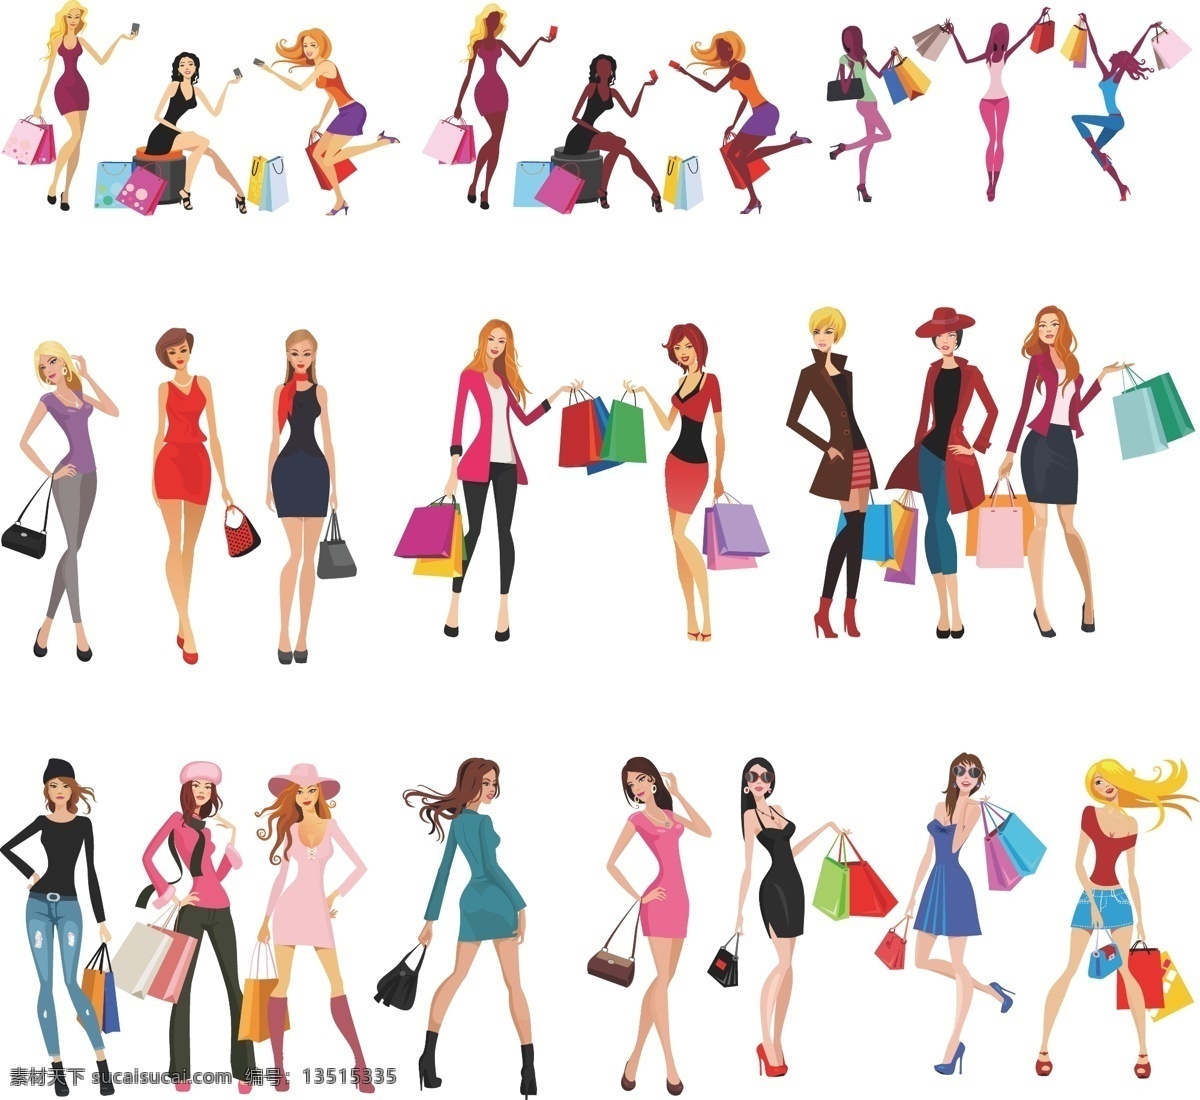 时尚 购物 女性 矢量 卡通时尚美女 购物美女 时尚女性 商场购物形象 人物图库 生活人物